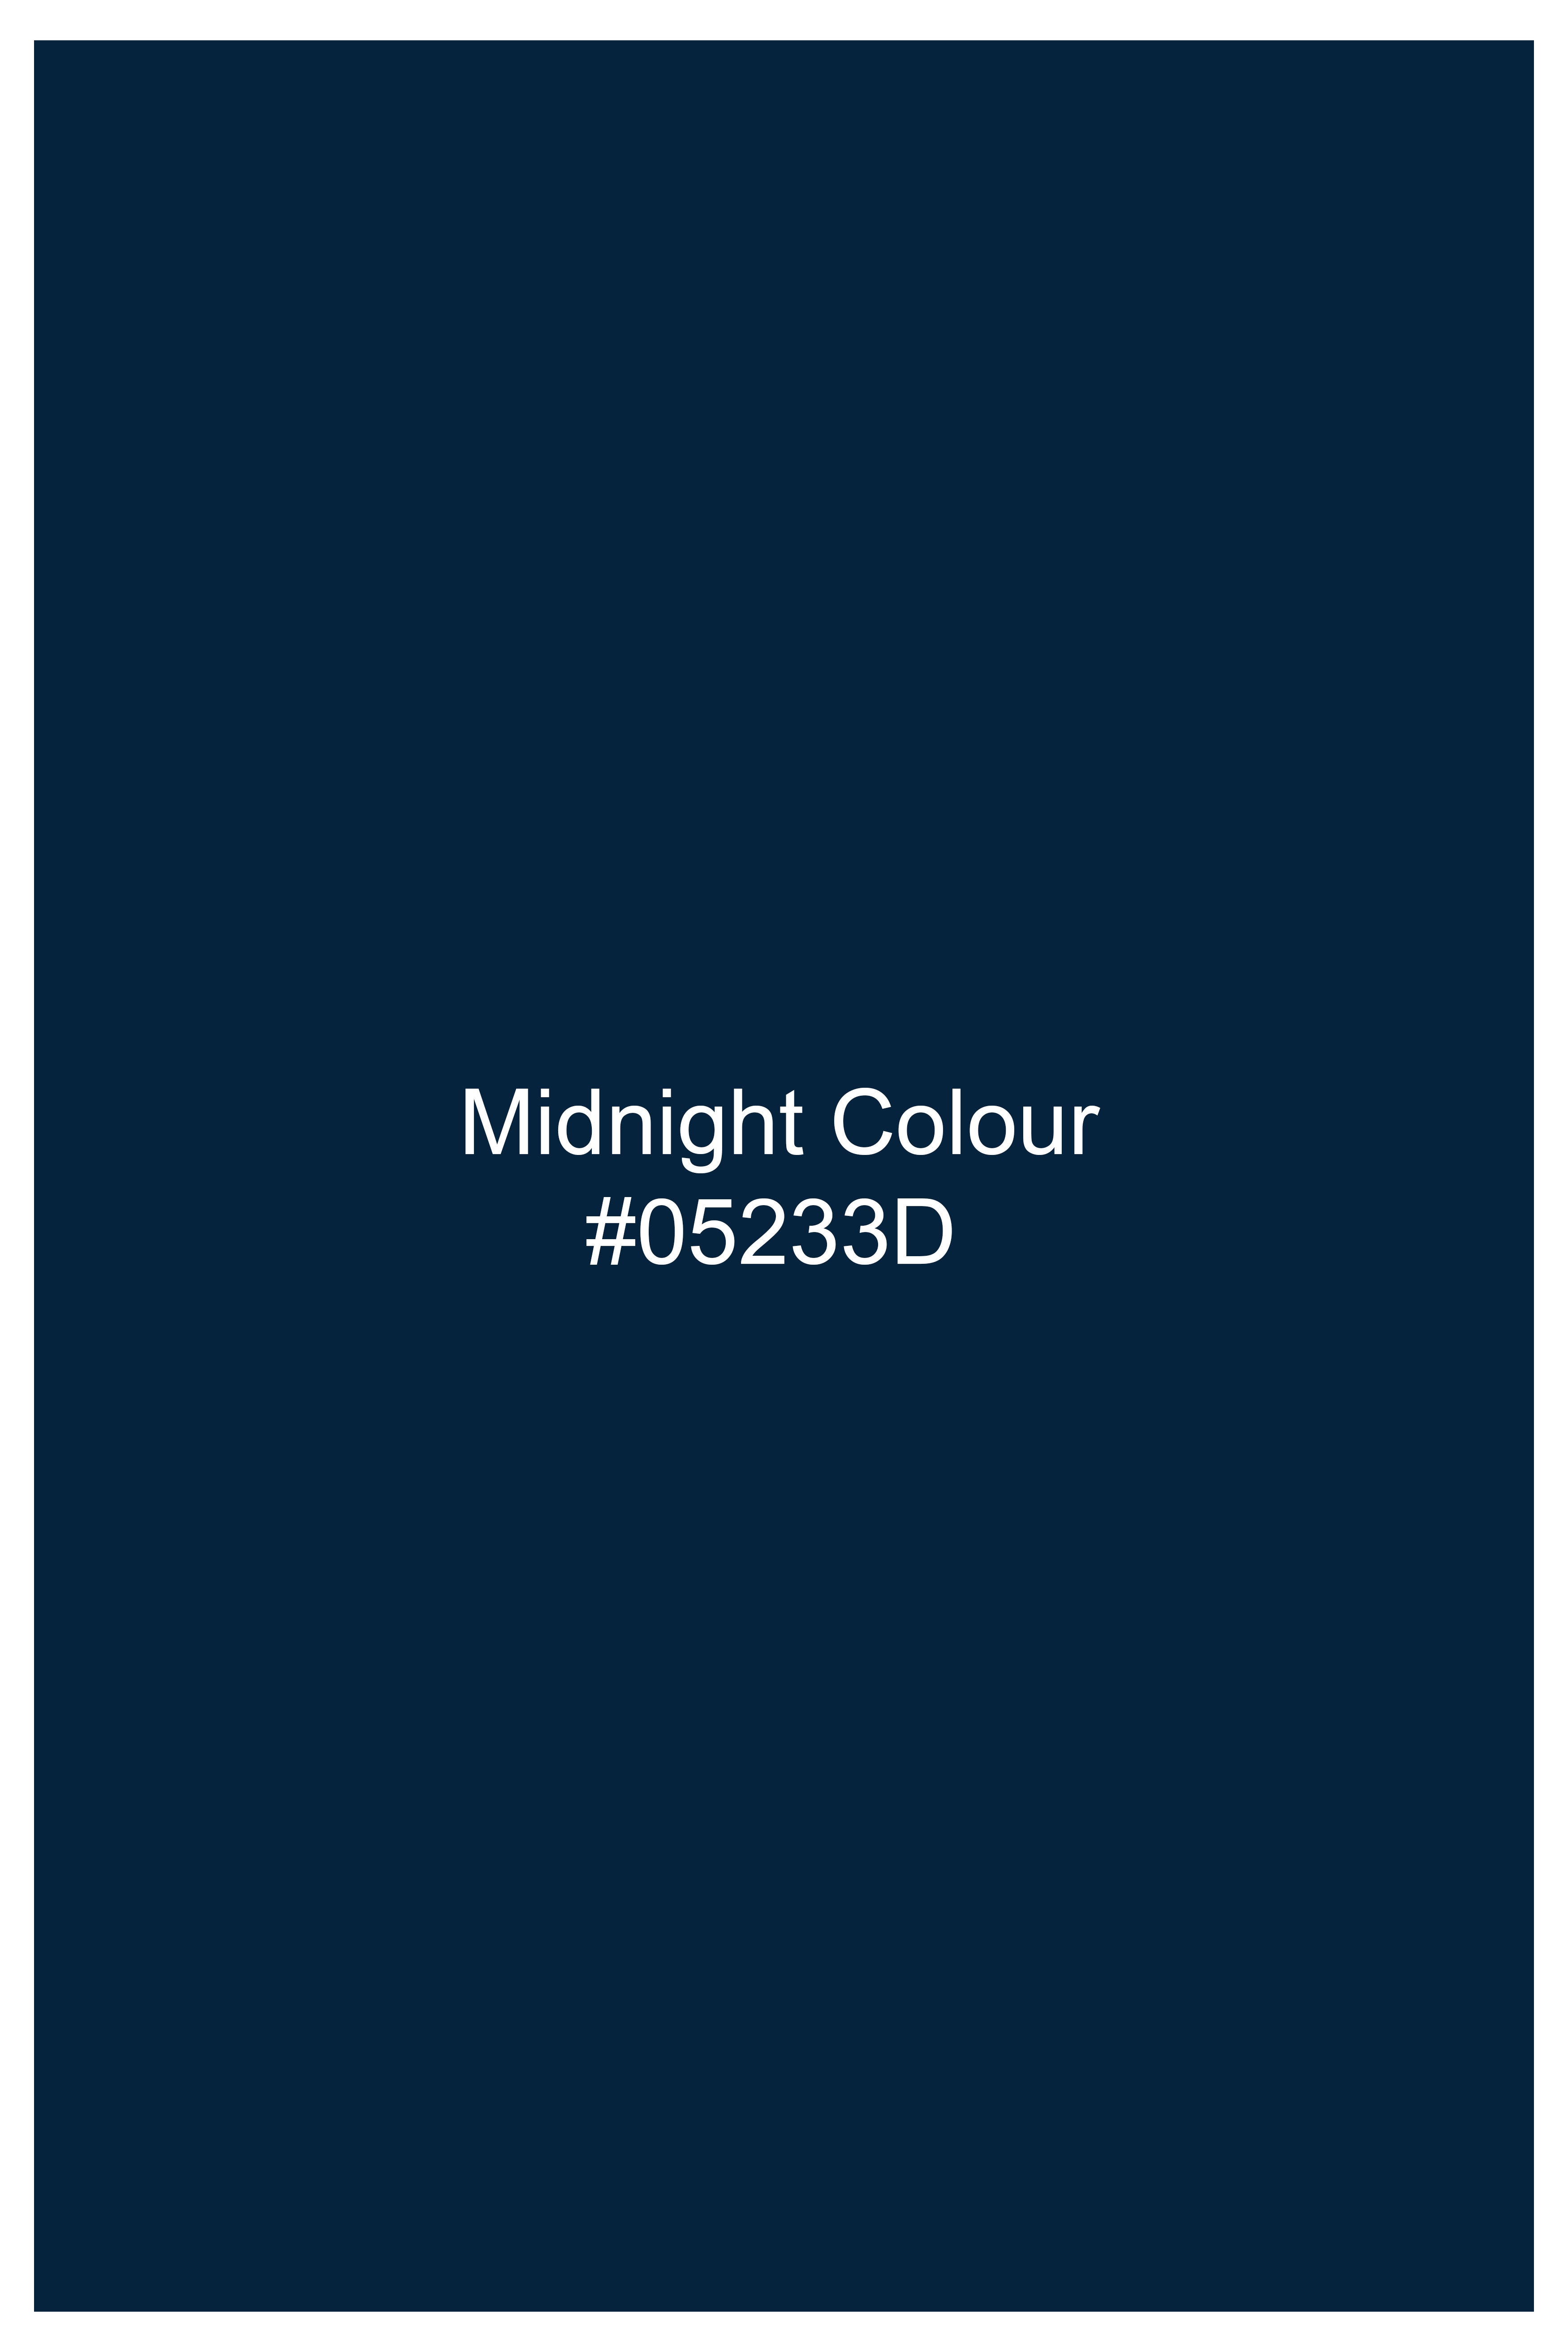 Midnight Blue Subtle Sheen Super Soft Premium Cotton Designer Shirt